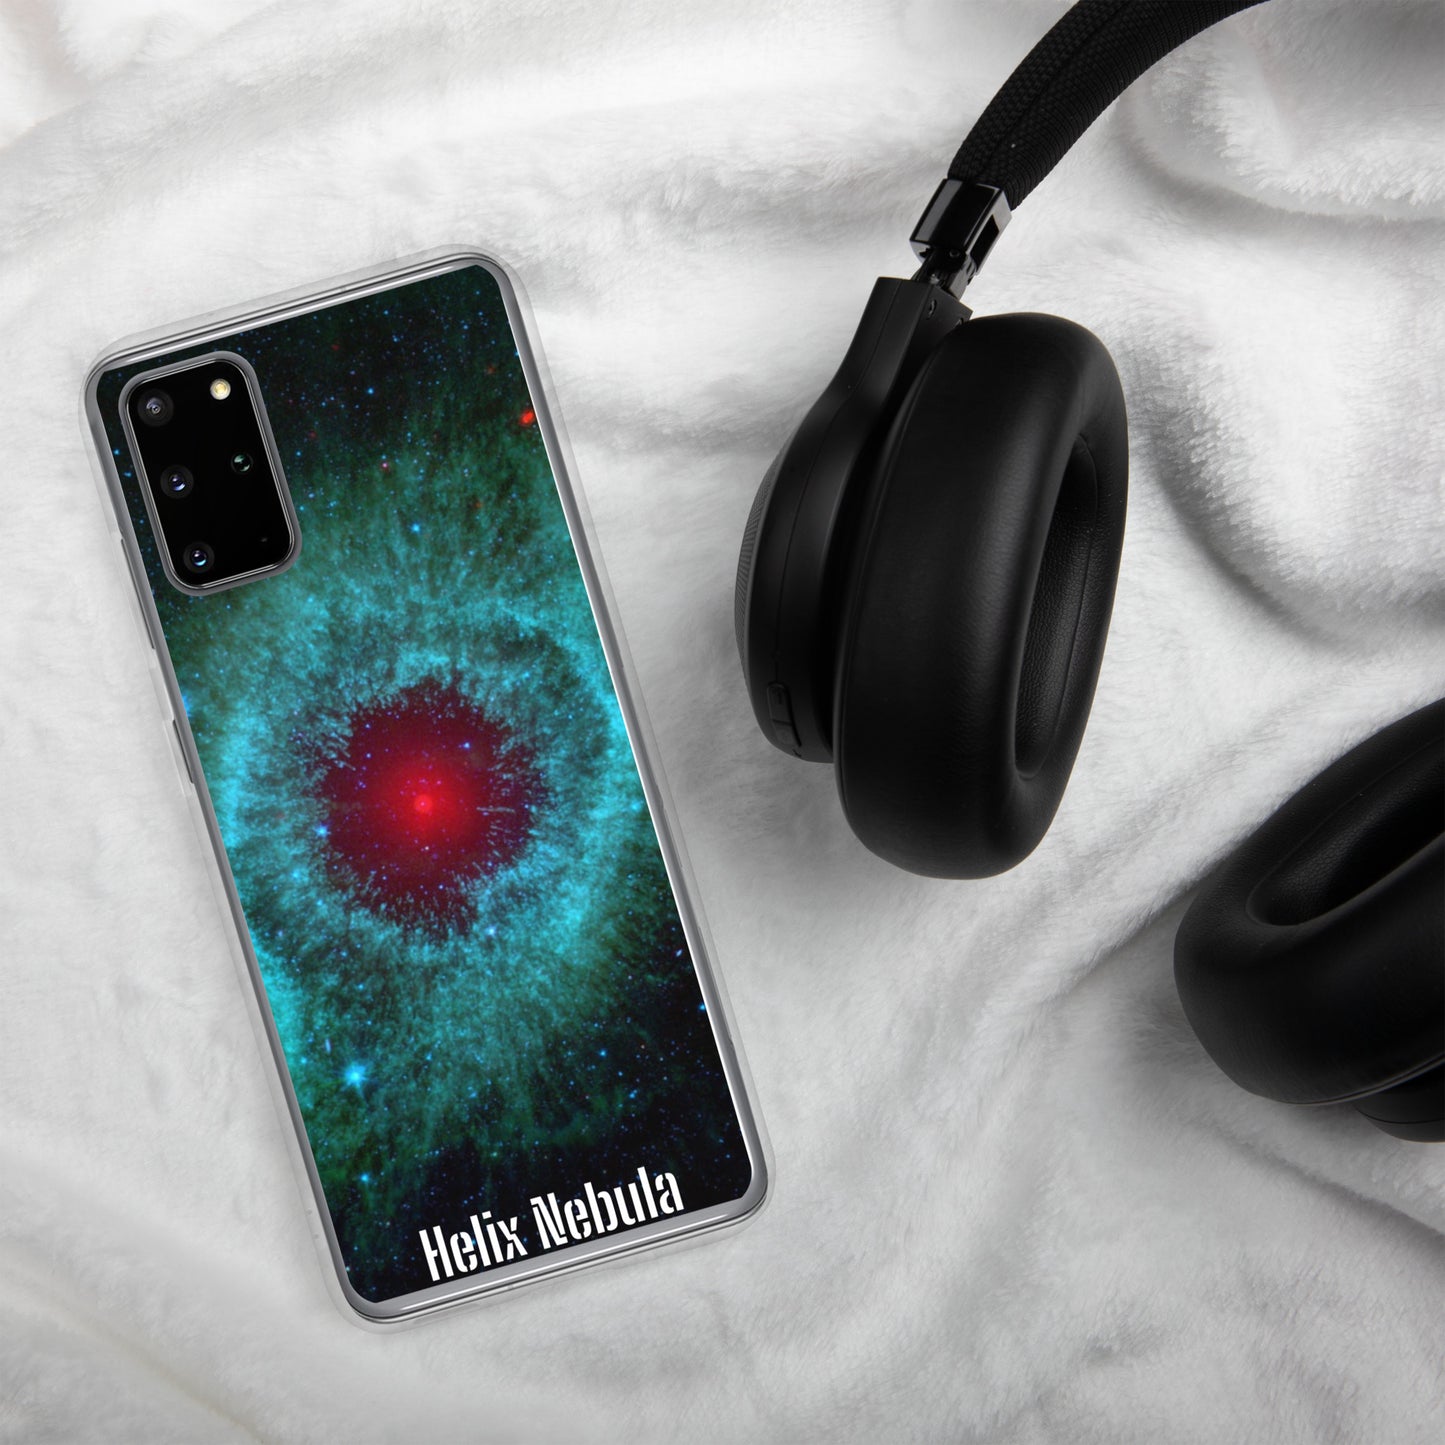 Samsung® Phone Case: Helix Nebula